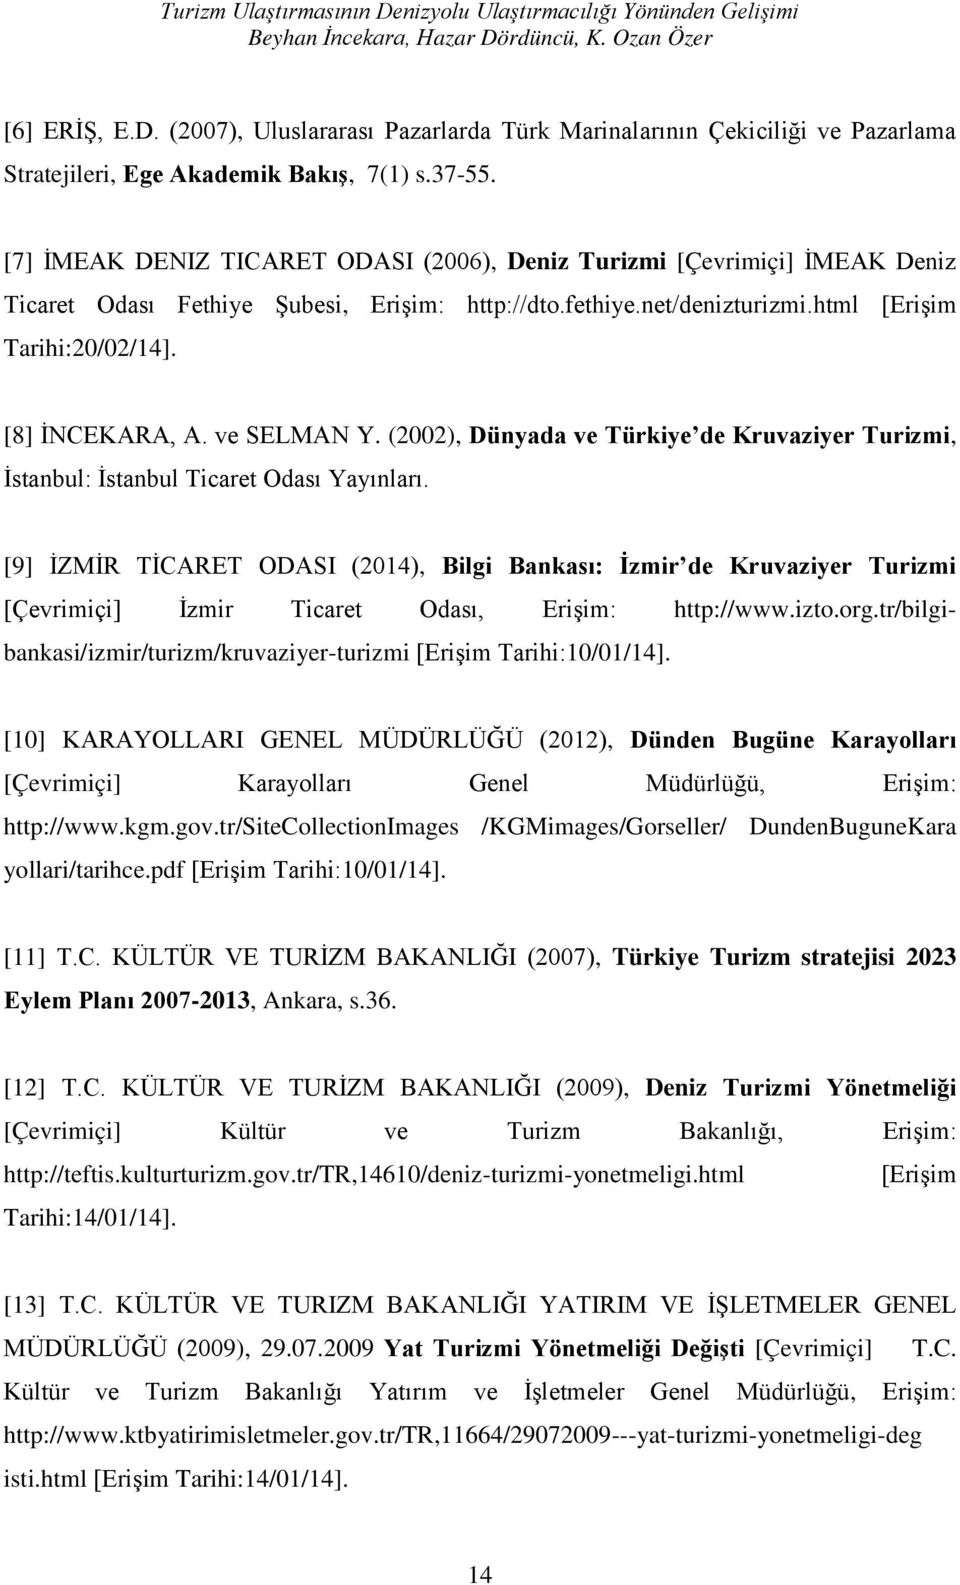 [8] İNCEKARA, A. ve SELMAN Y. (2002), Dünyada ve Türkiye de Kruvaziyer Turizmi, İstanbul: İstanbul Ticaret Odası Yayınları.